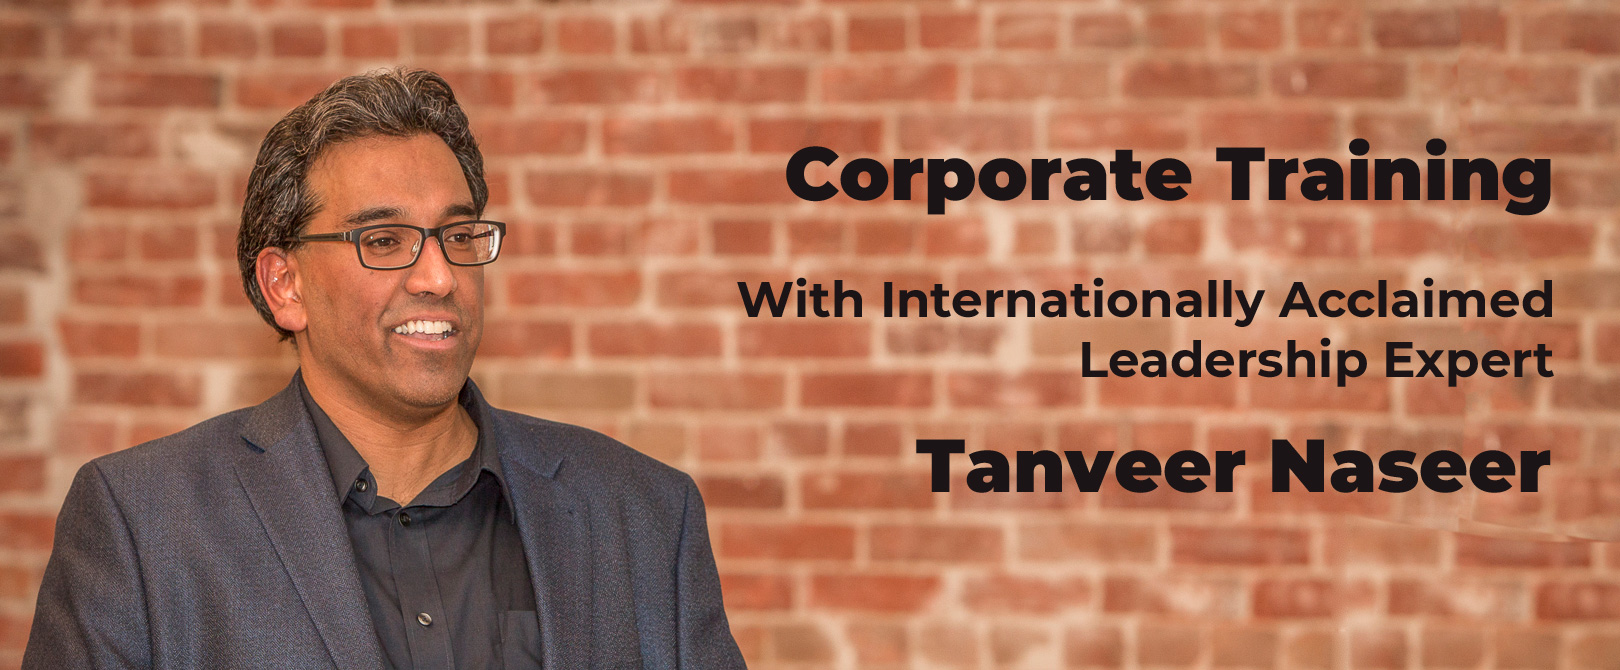 Tanveer Naseer - Corporate Training